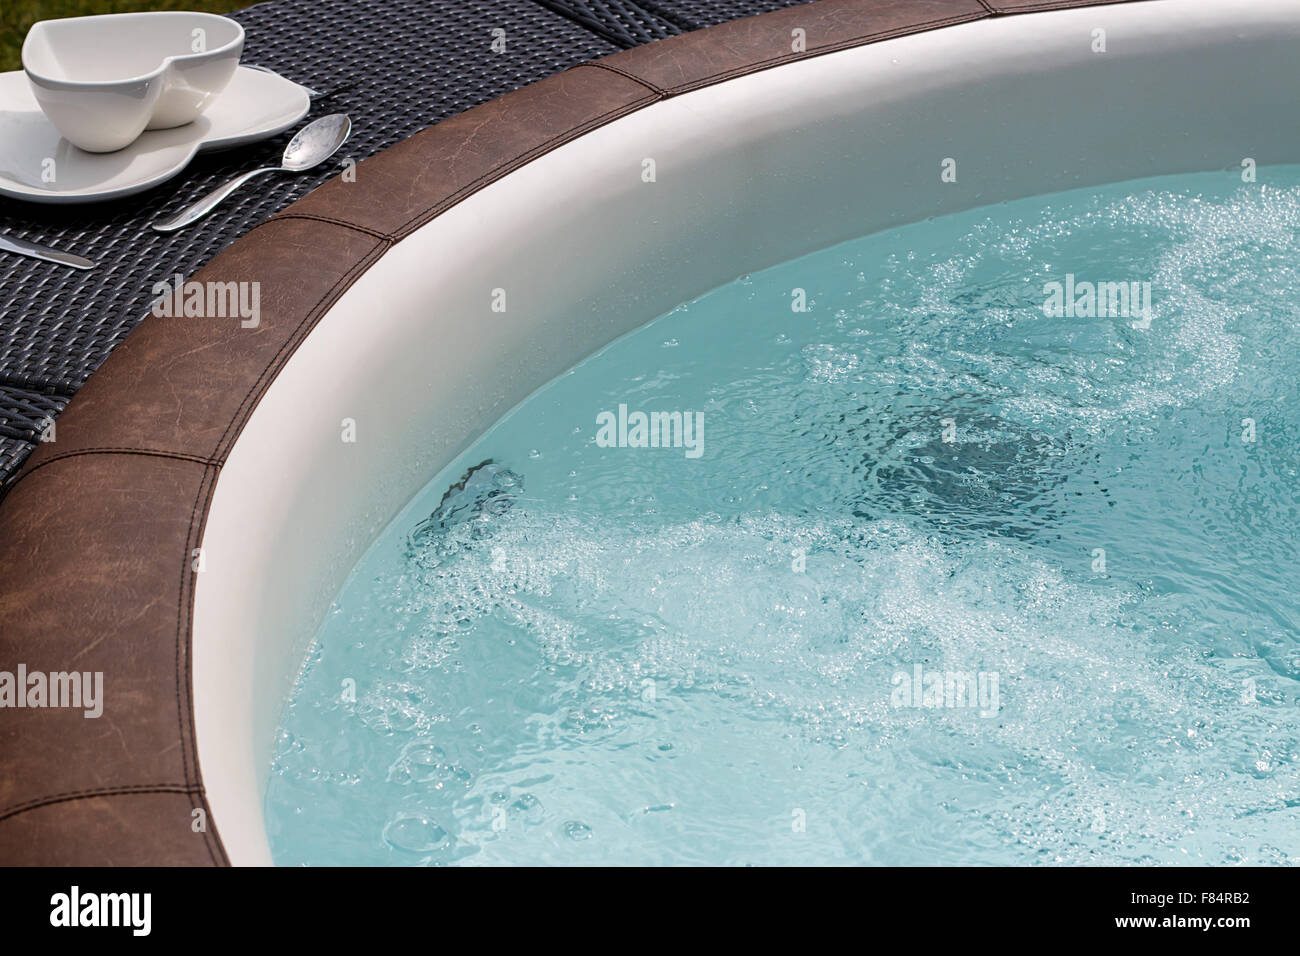 Independiente de lujo con bañera o jacuzzi caliente burbujeante agua caliente Foto de stock